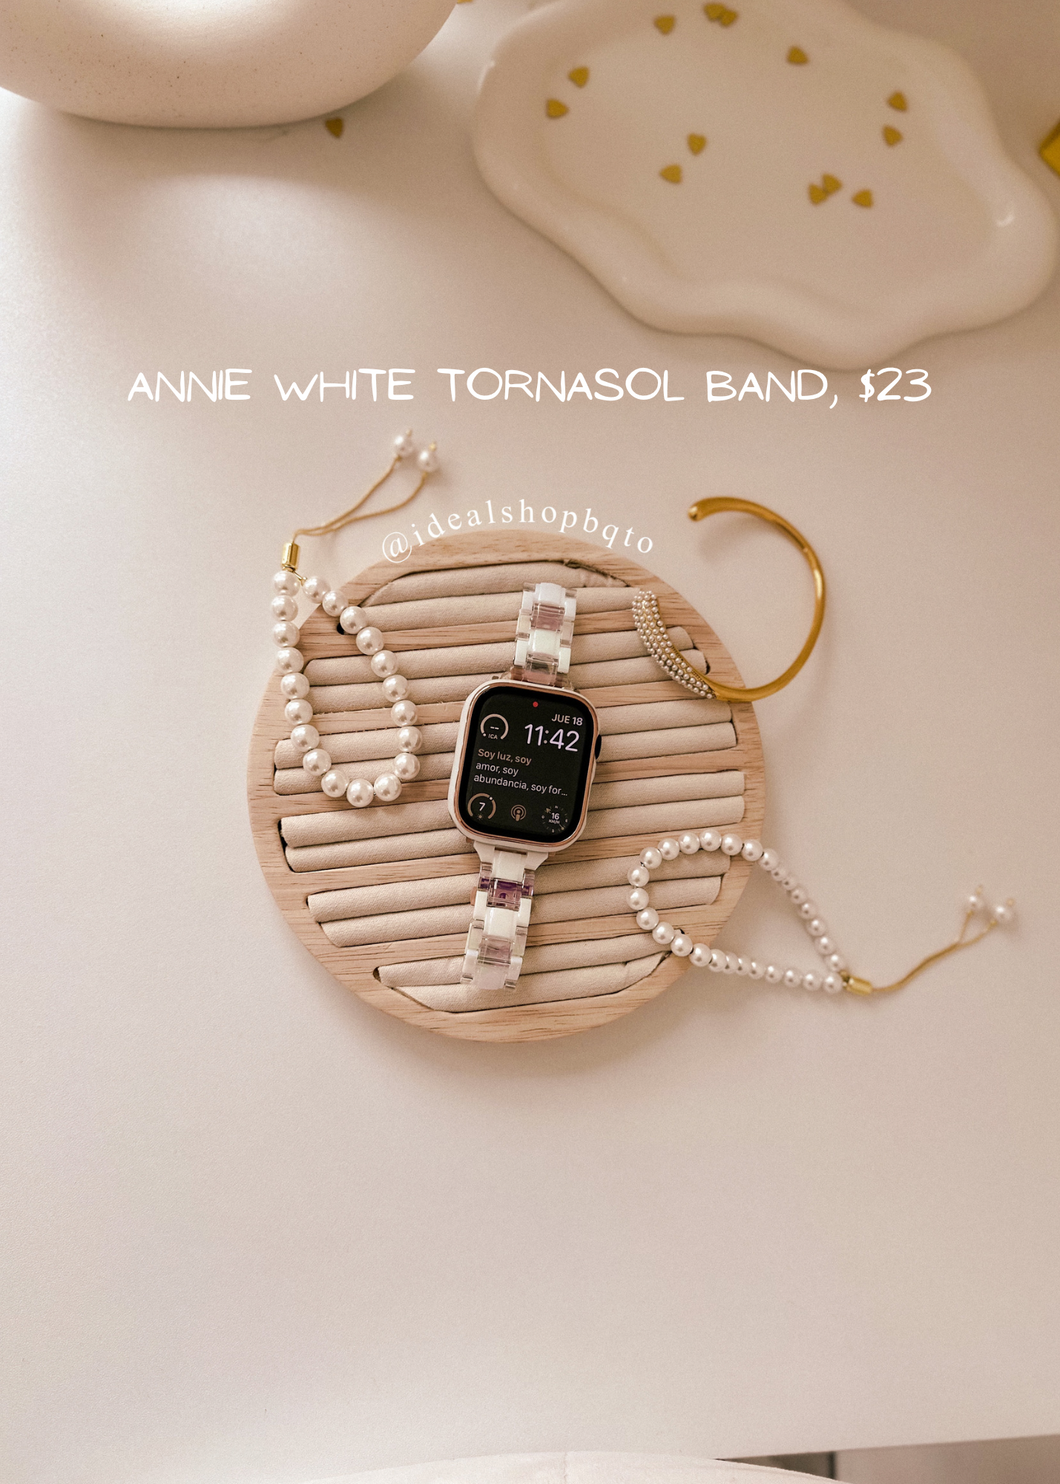 Annie White Tornasol Band